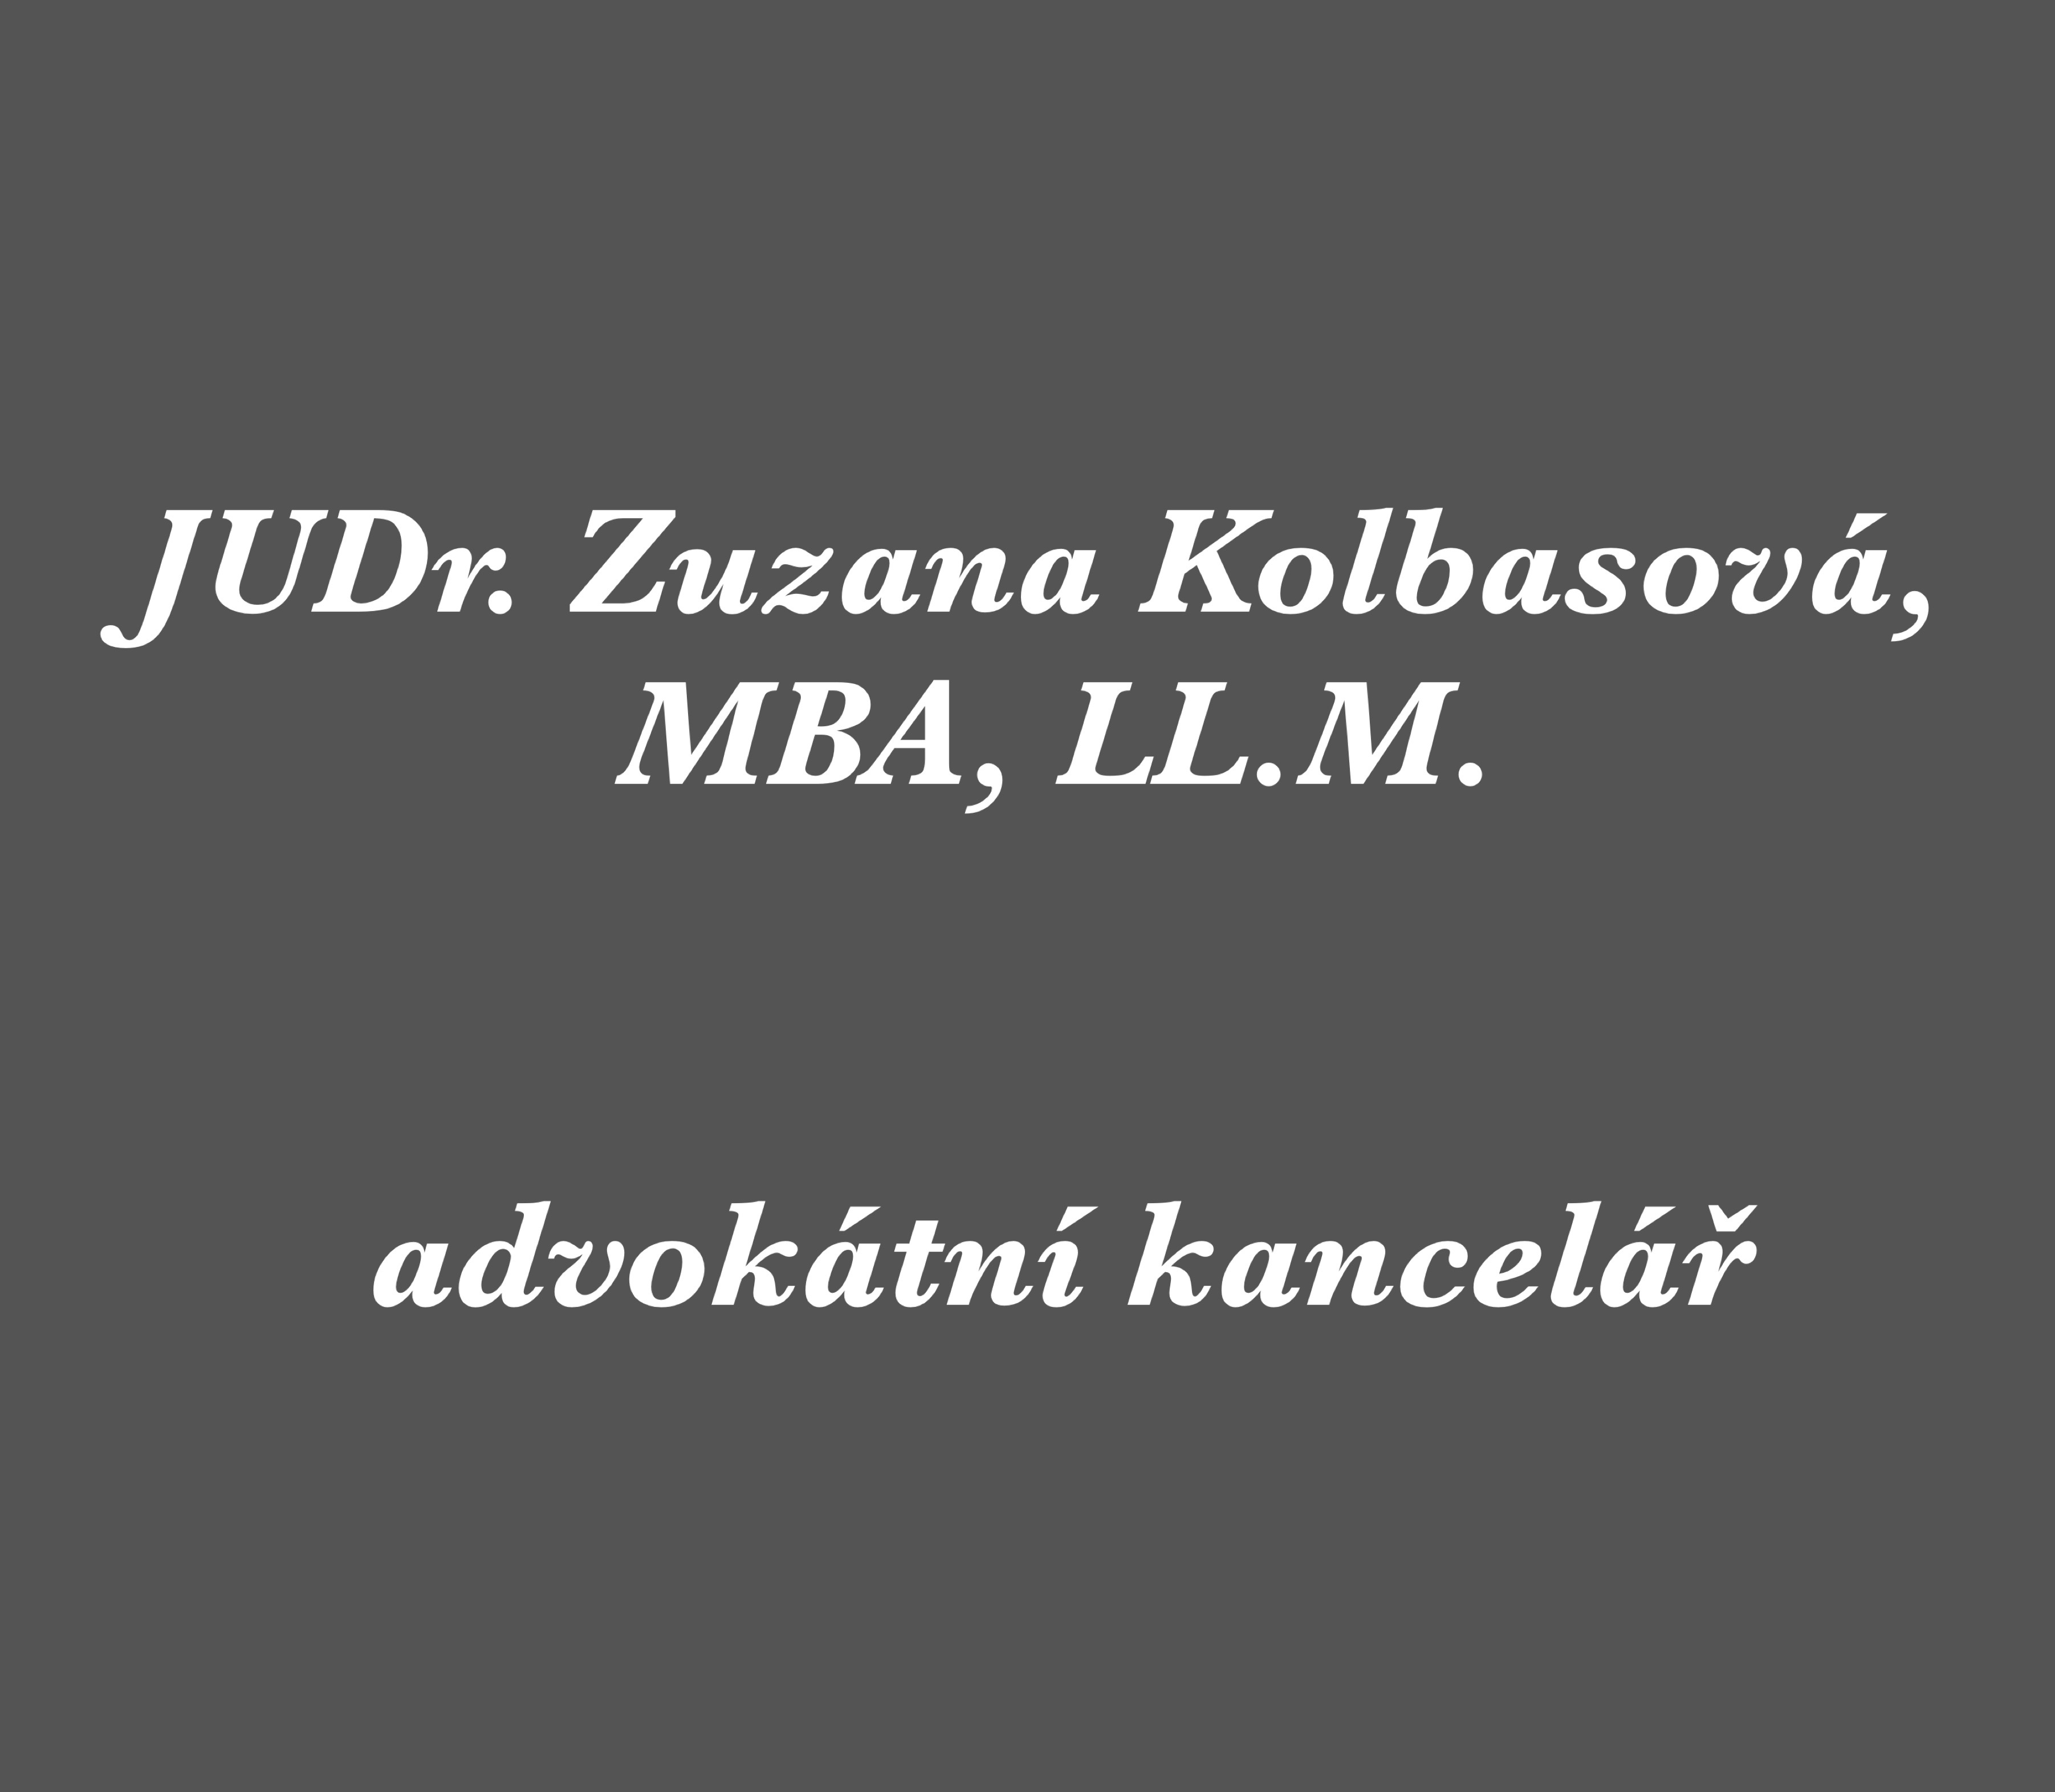 JUDR.Zuzana Kolbasová